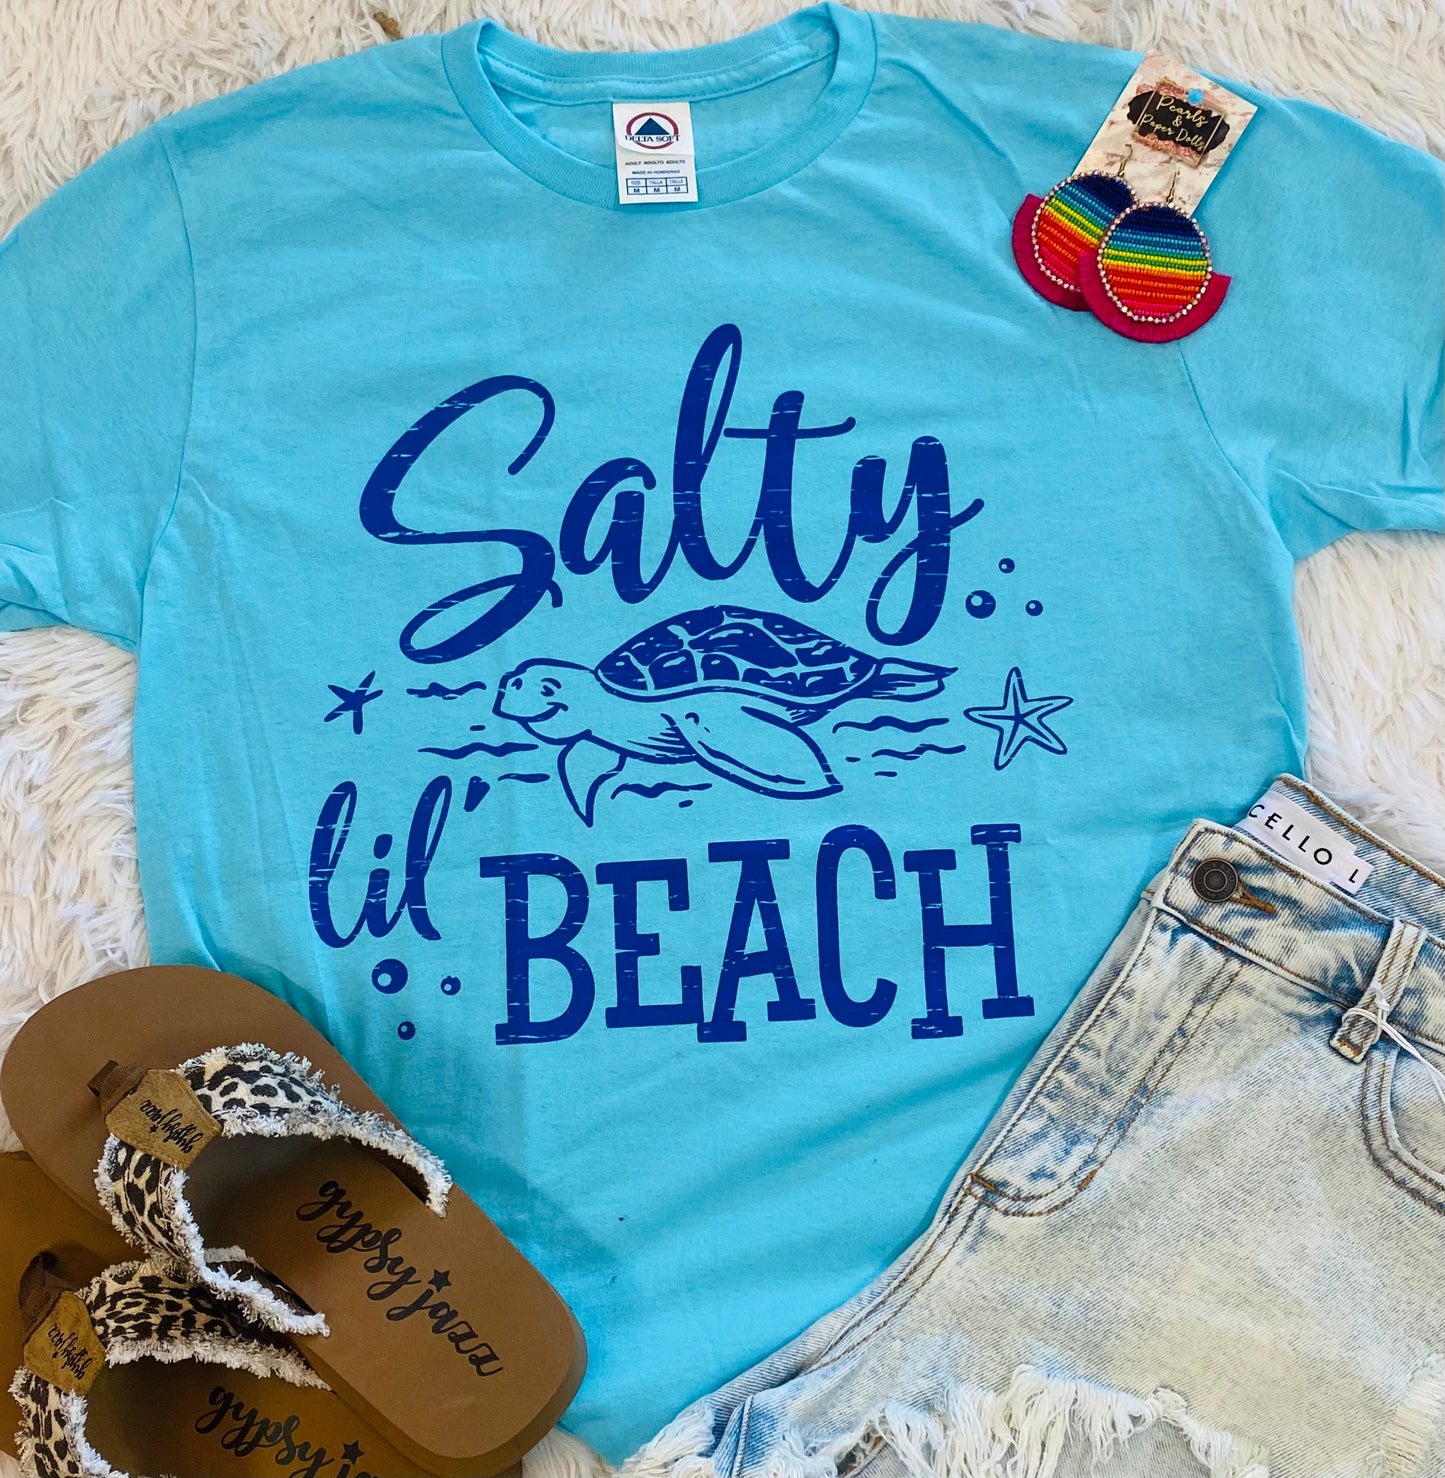 Salty Lil Beach Tee